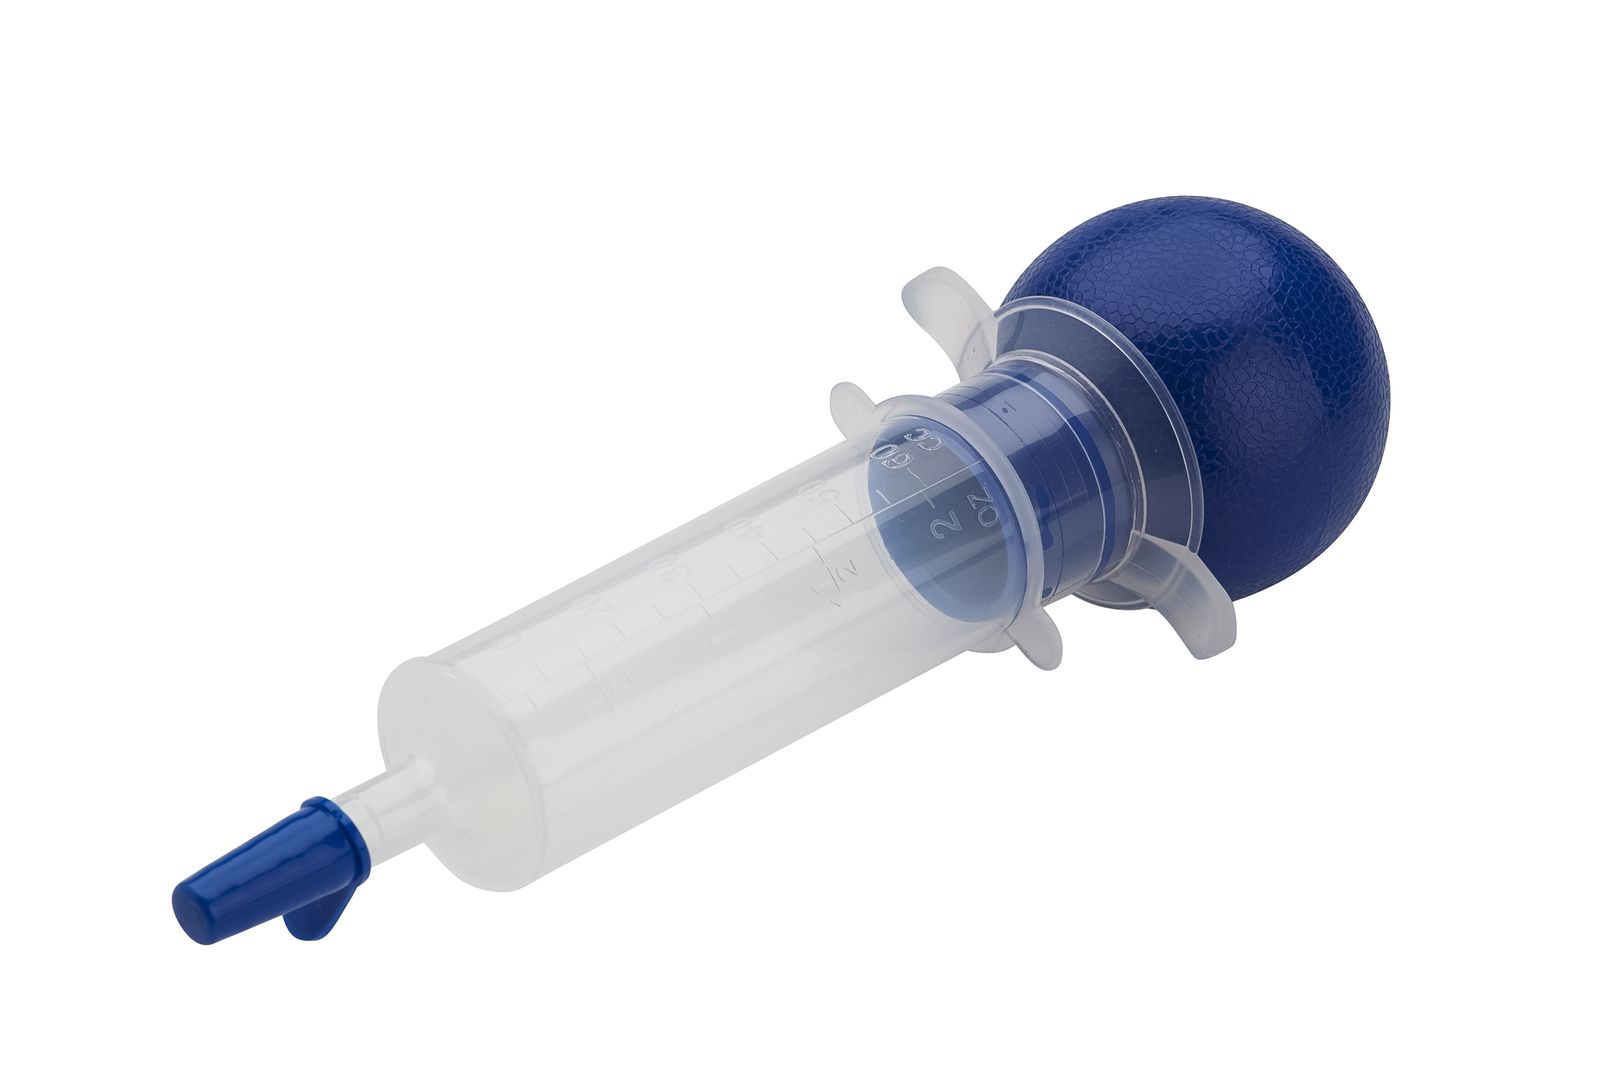 Asepto Syringe/ Bulb Syringe